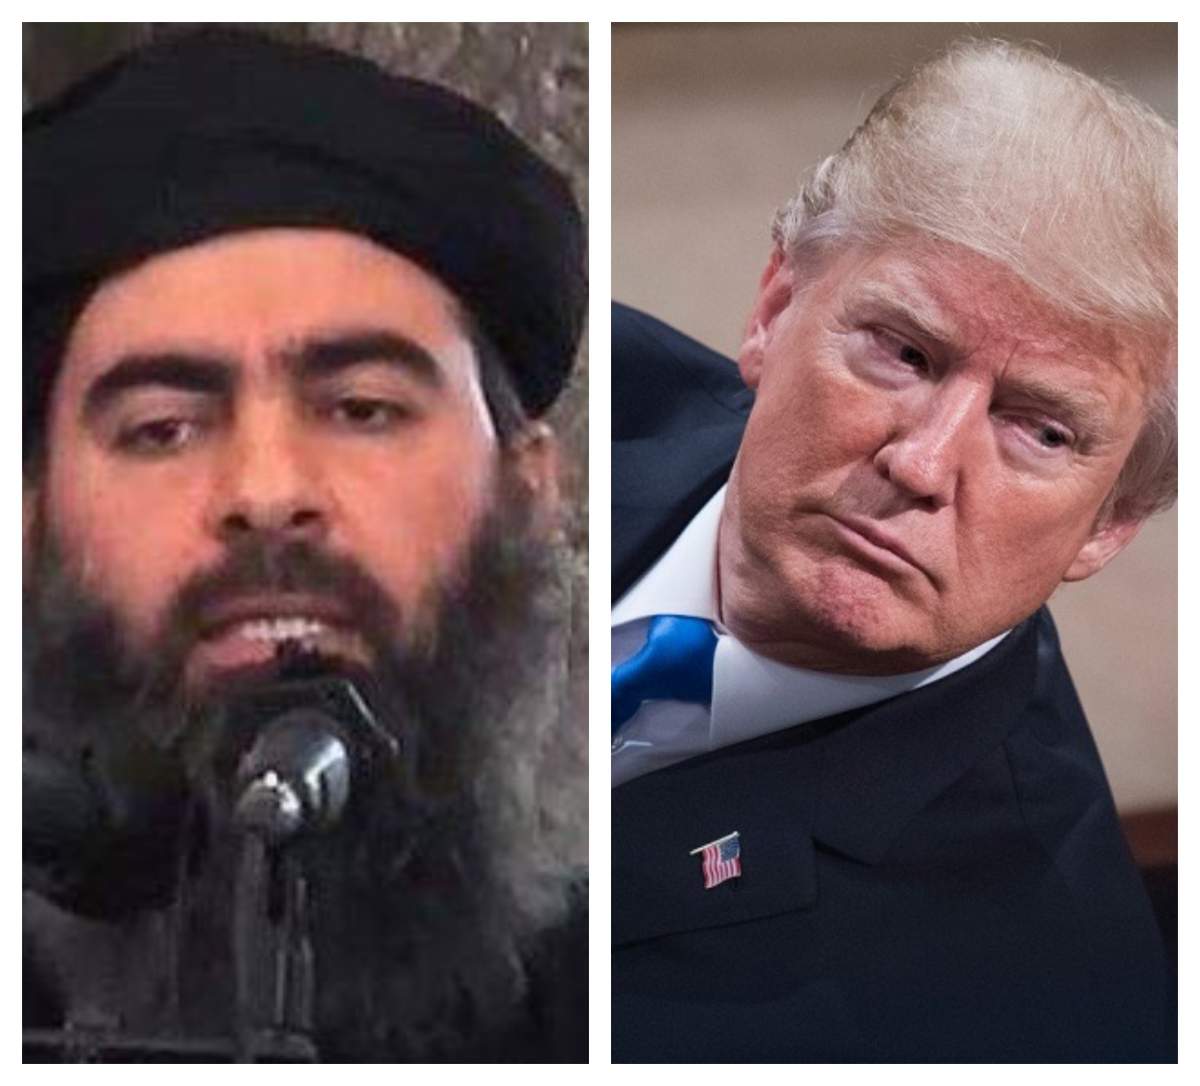 Liderul grupării teroriste ISIS, ucis în Siria într-un raid american. Donald Trump a urmărit live operațiunea